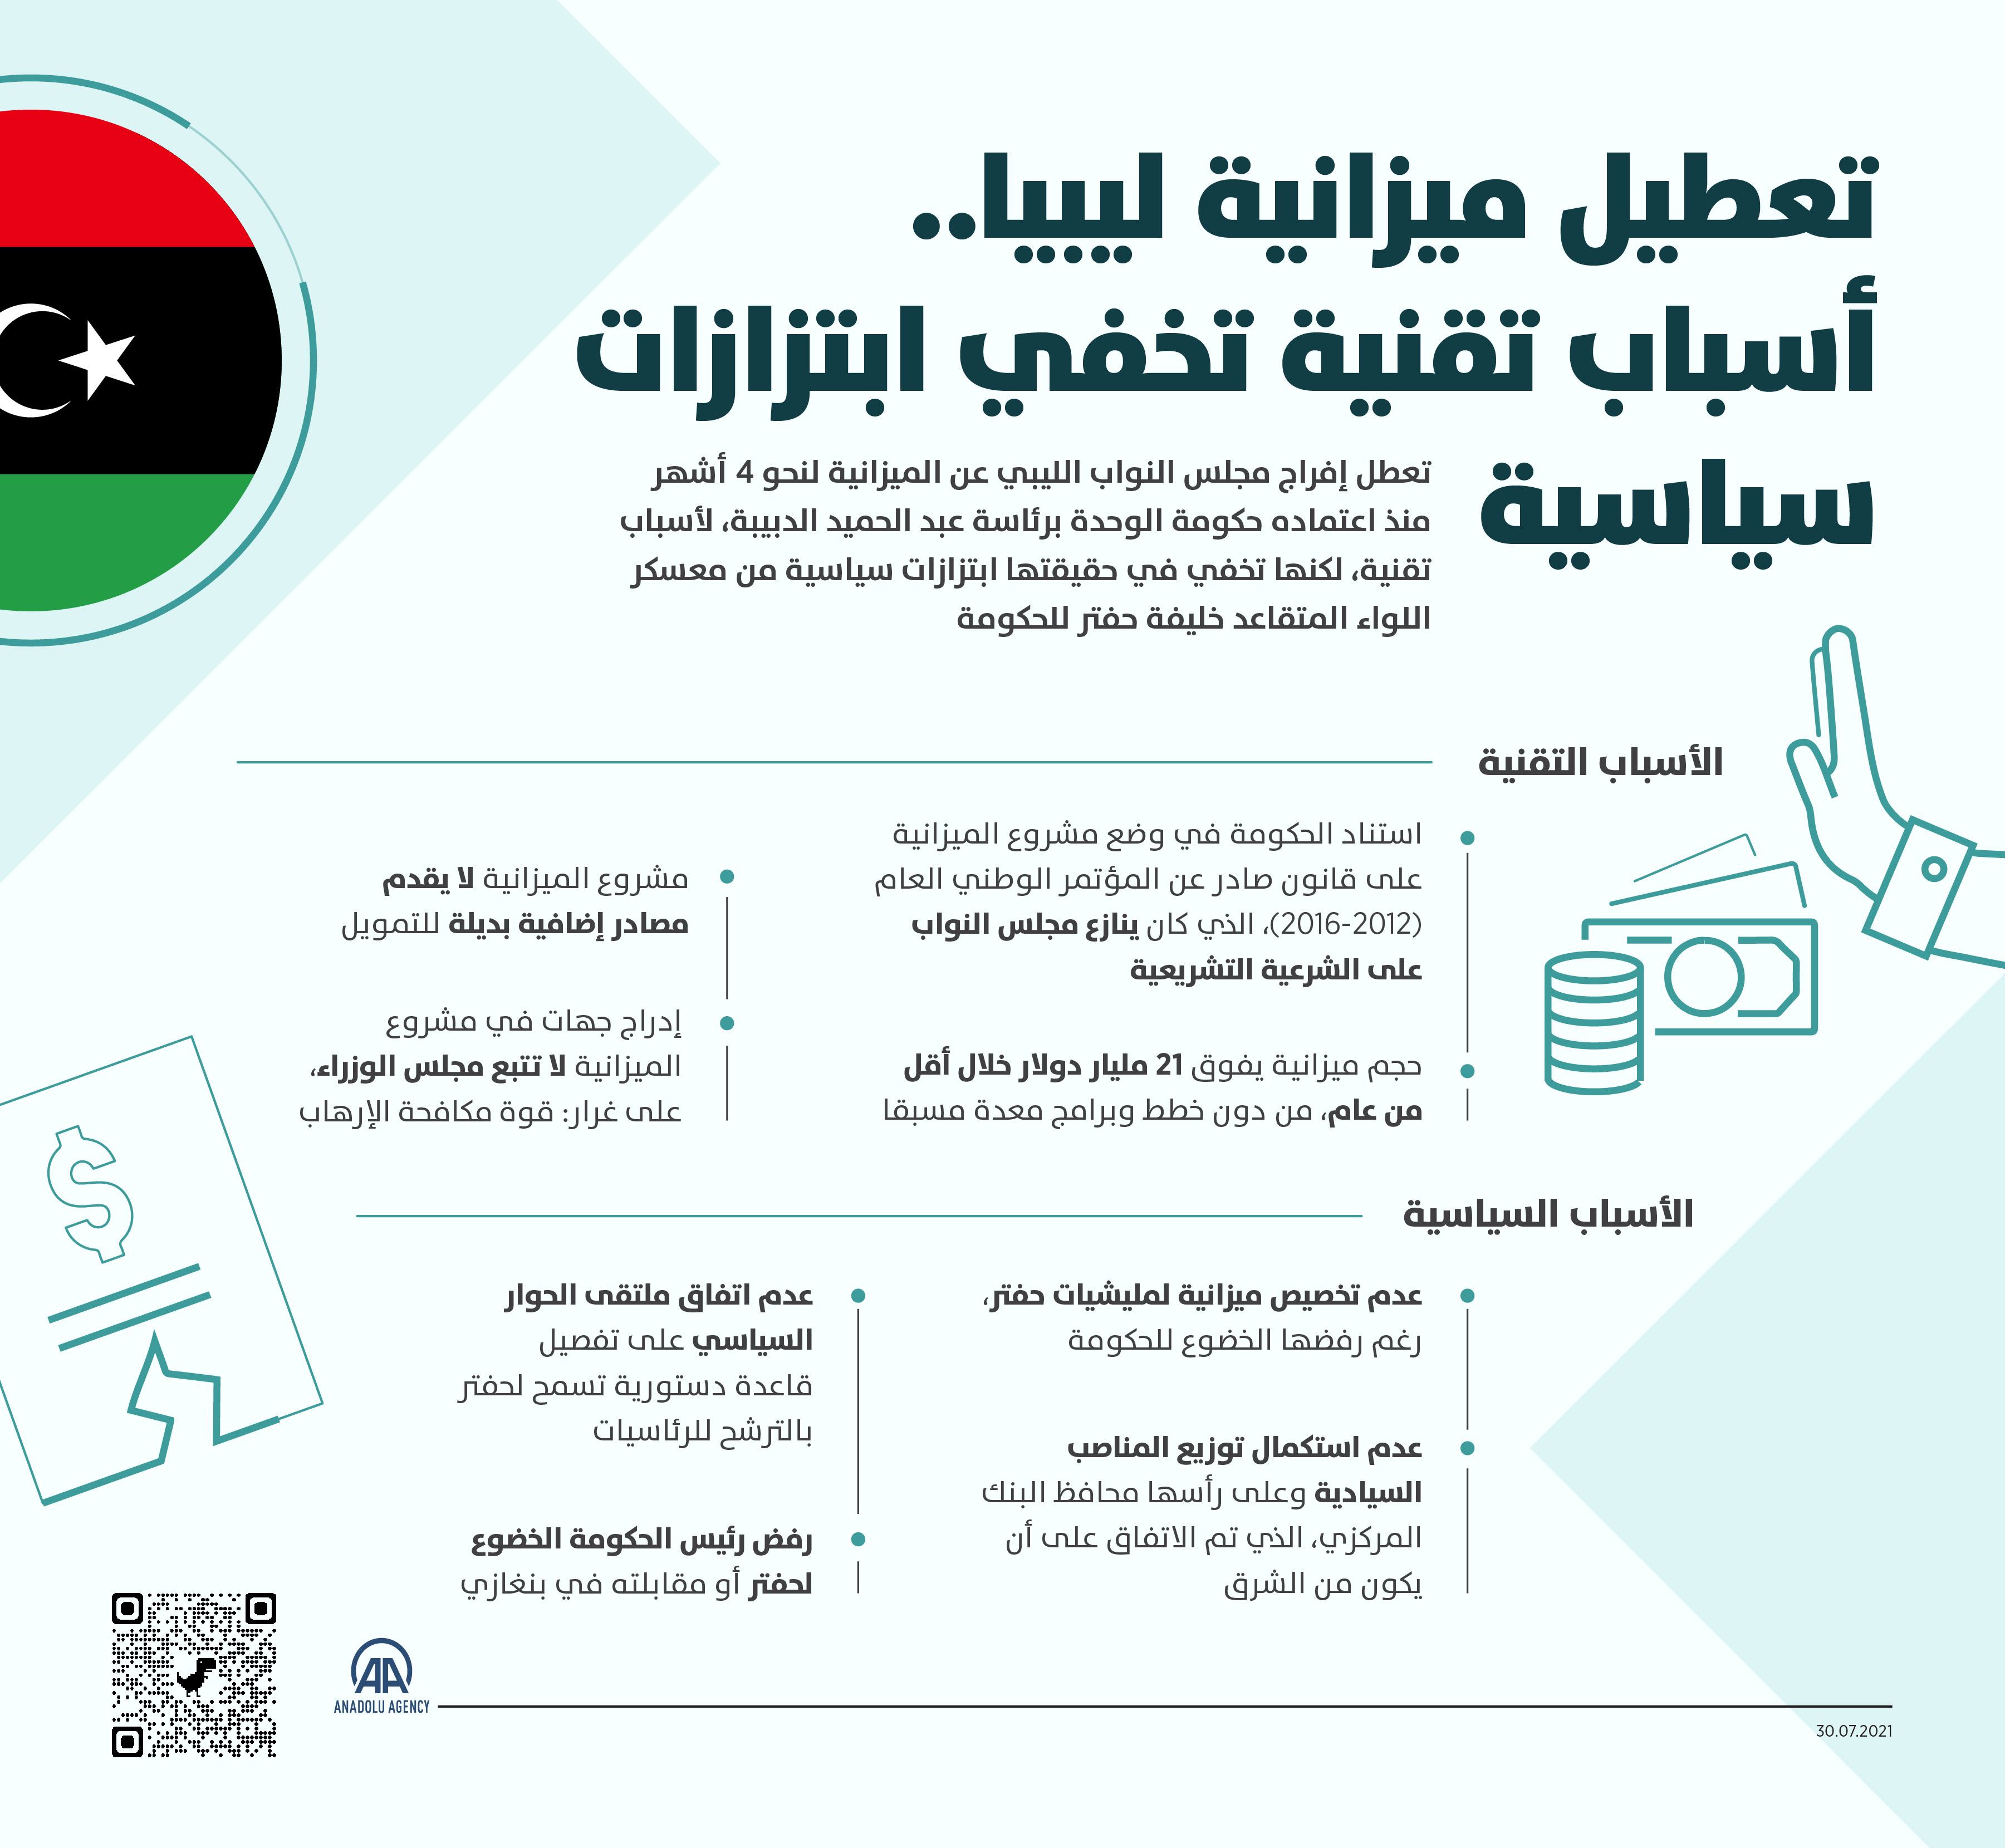 تعطيل ميزانية ليبيا.. أسباب تقنية تخفي ابتزازات سياسية